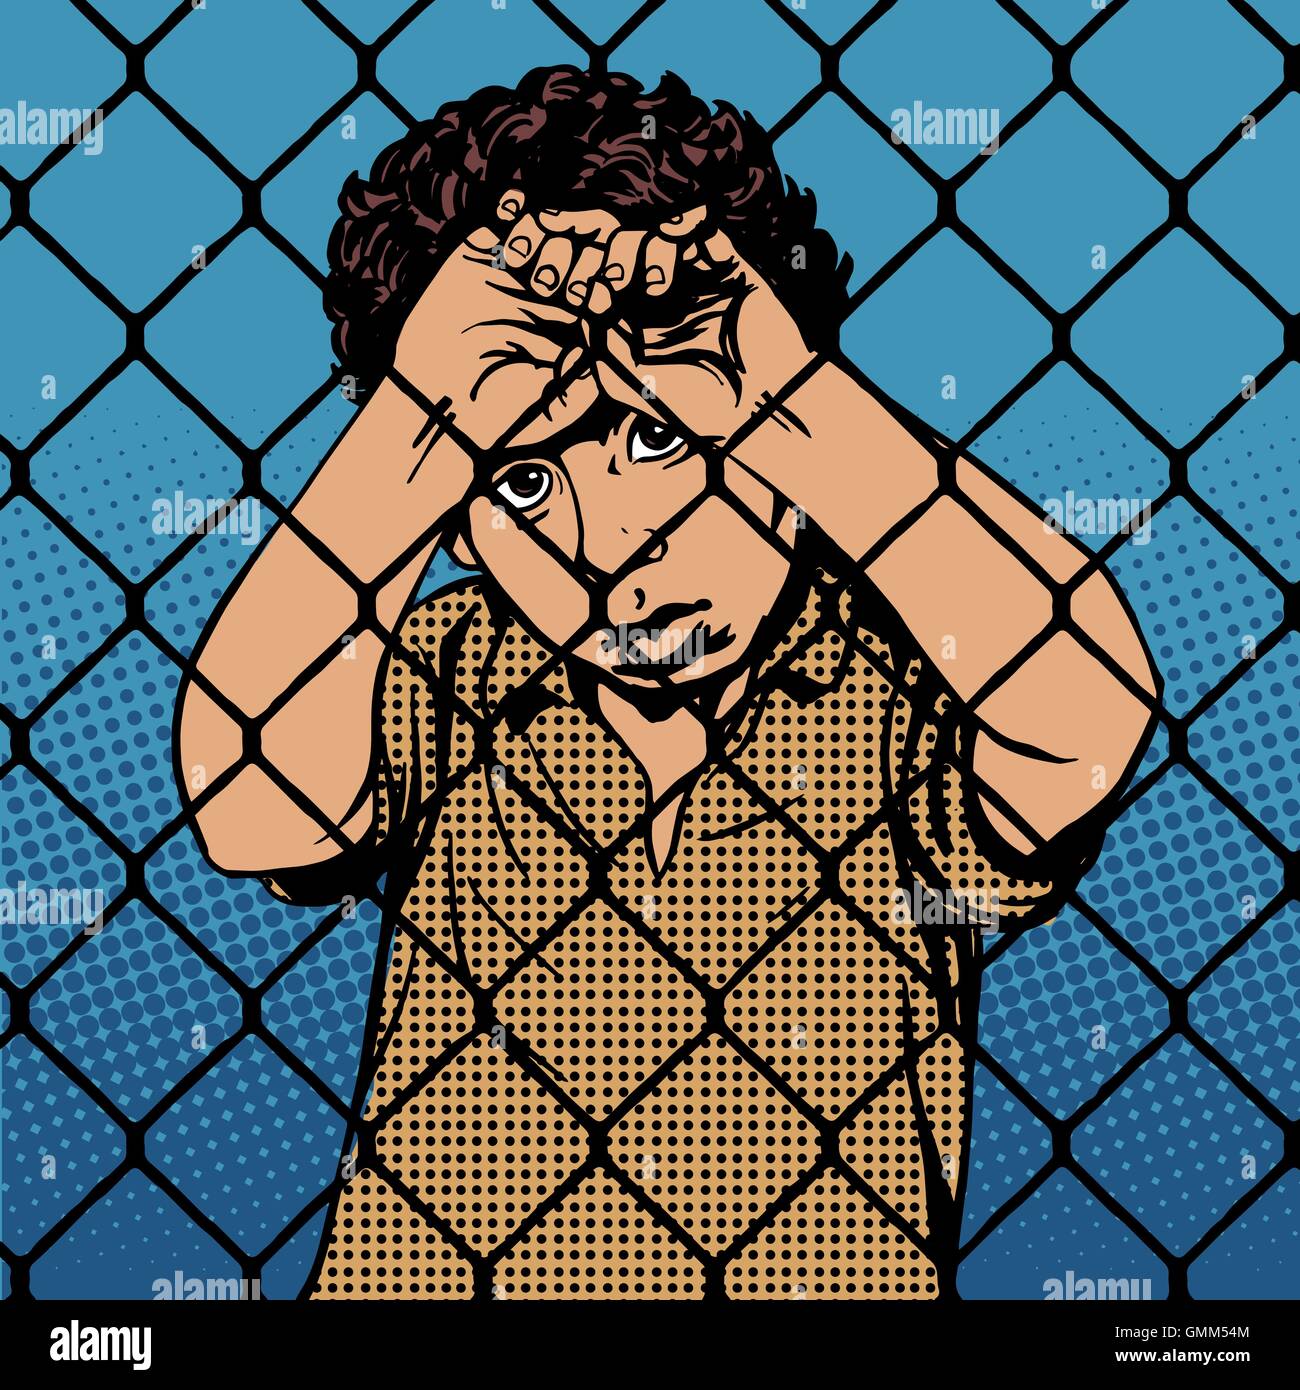 Garçon enfant migrants réfugiés derrière les barreaux la limite de prison Illustration de Vecteur